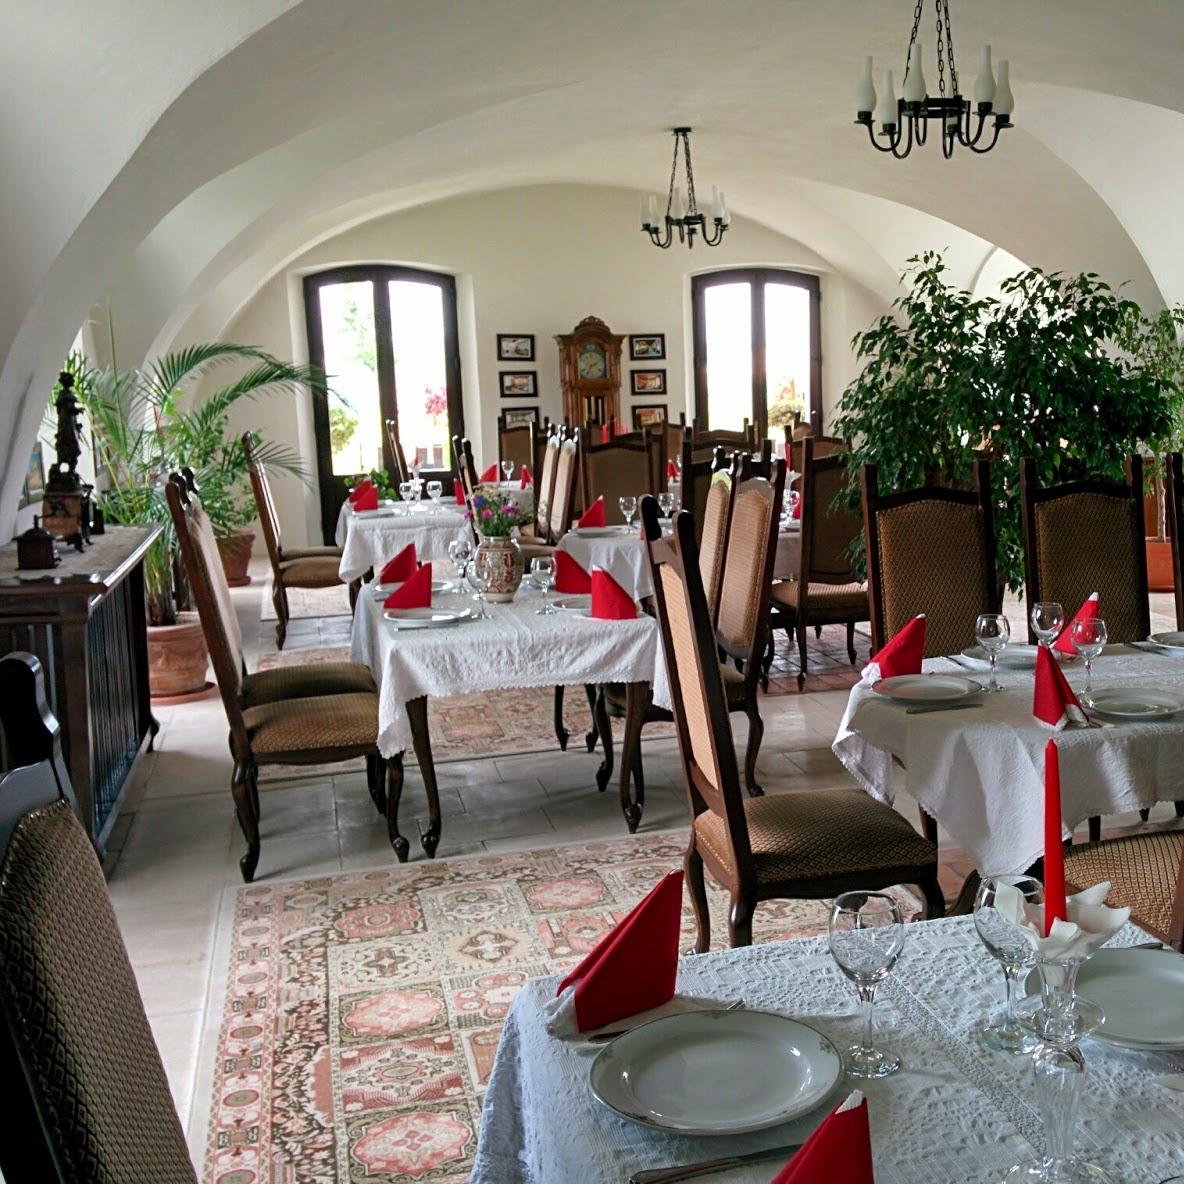 Restaurant "Restaurant Hotel Medieval" in Alba Iulia